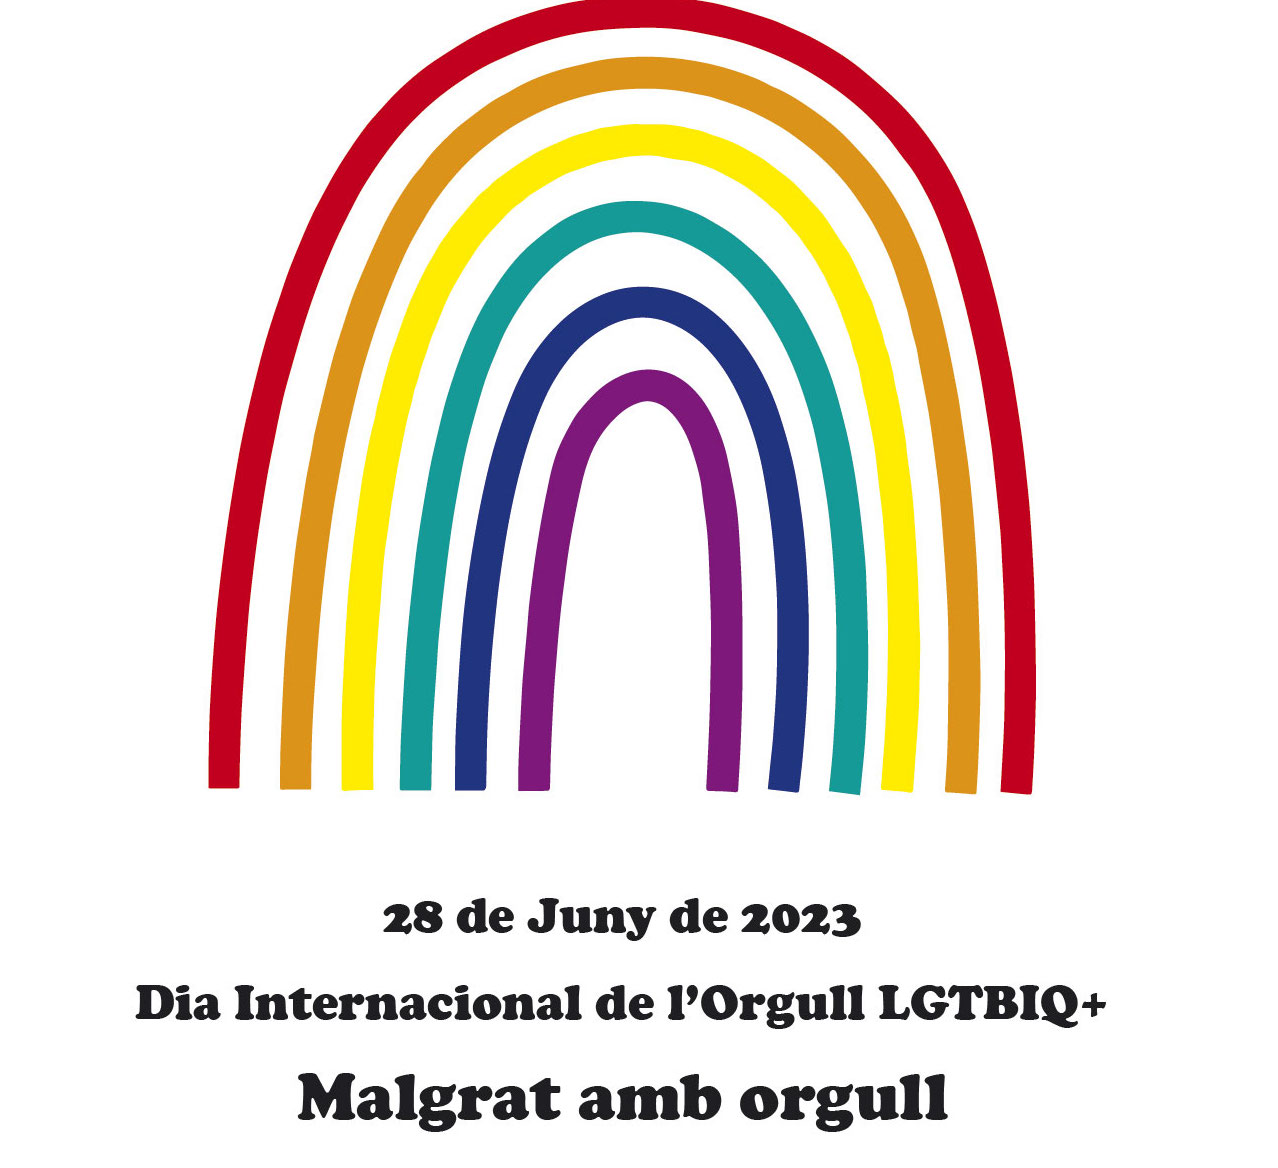 Dia Internacional de l'Orgull LGTBIQ+